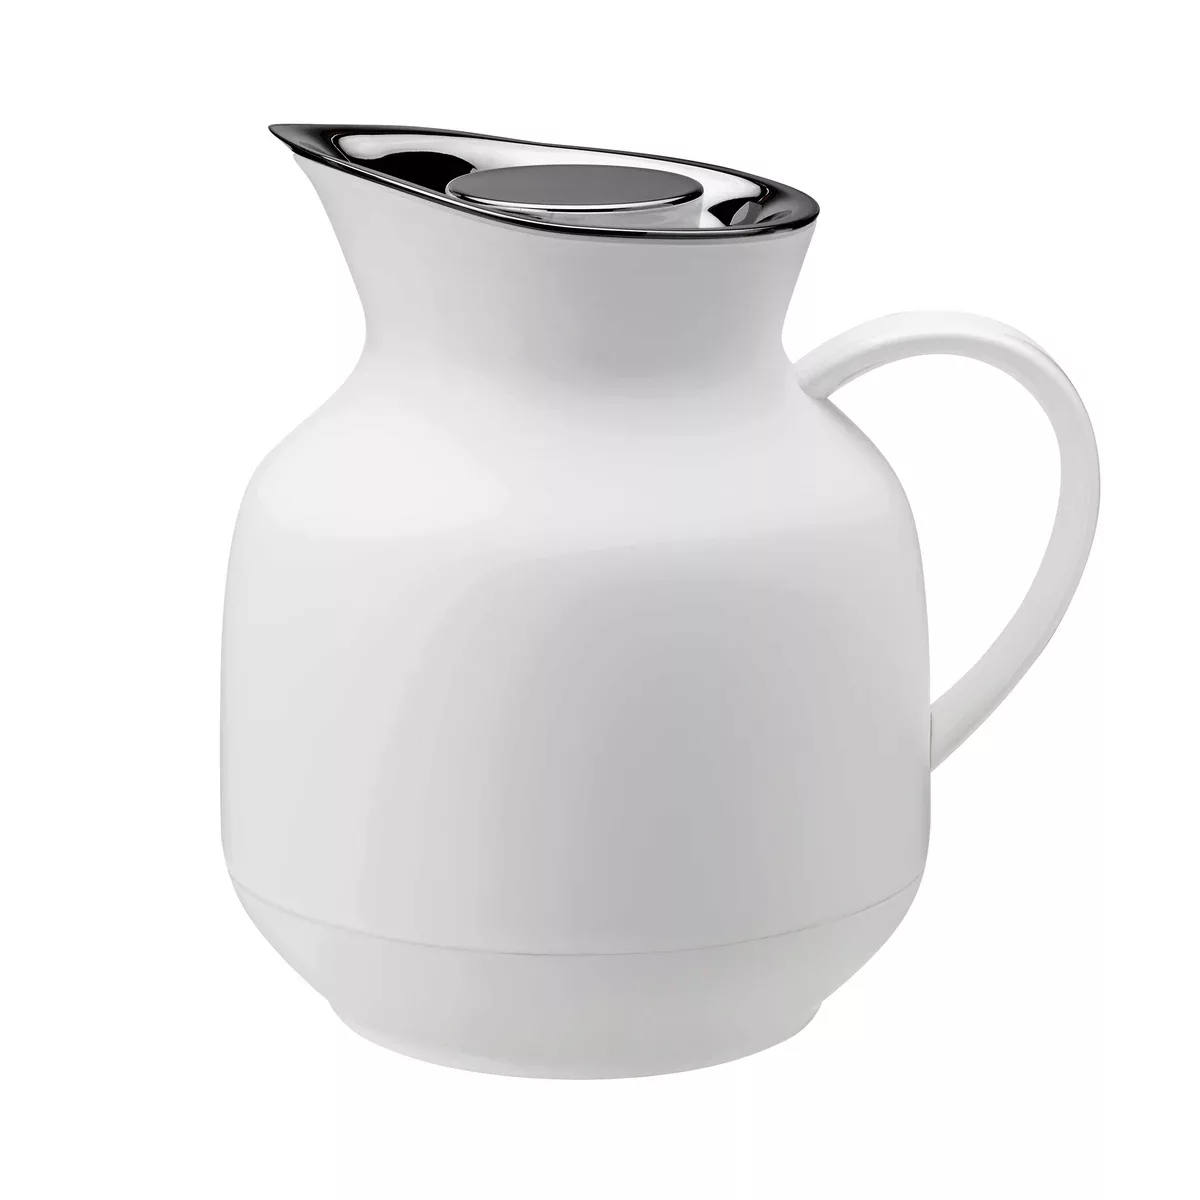 Stelton - Amphora Teeisolierkanne 1L - soft weiß/BPA- und Phthalatfrei/LxBx günstig online kaufen